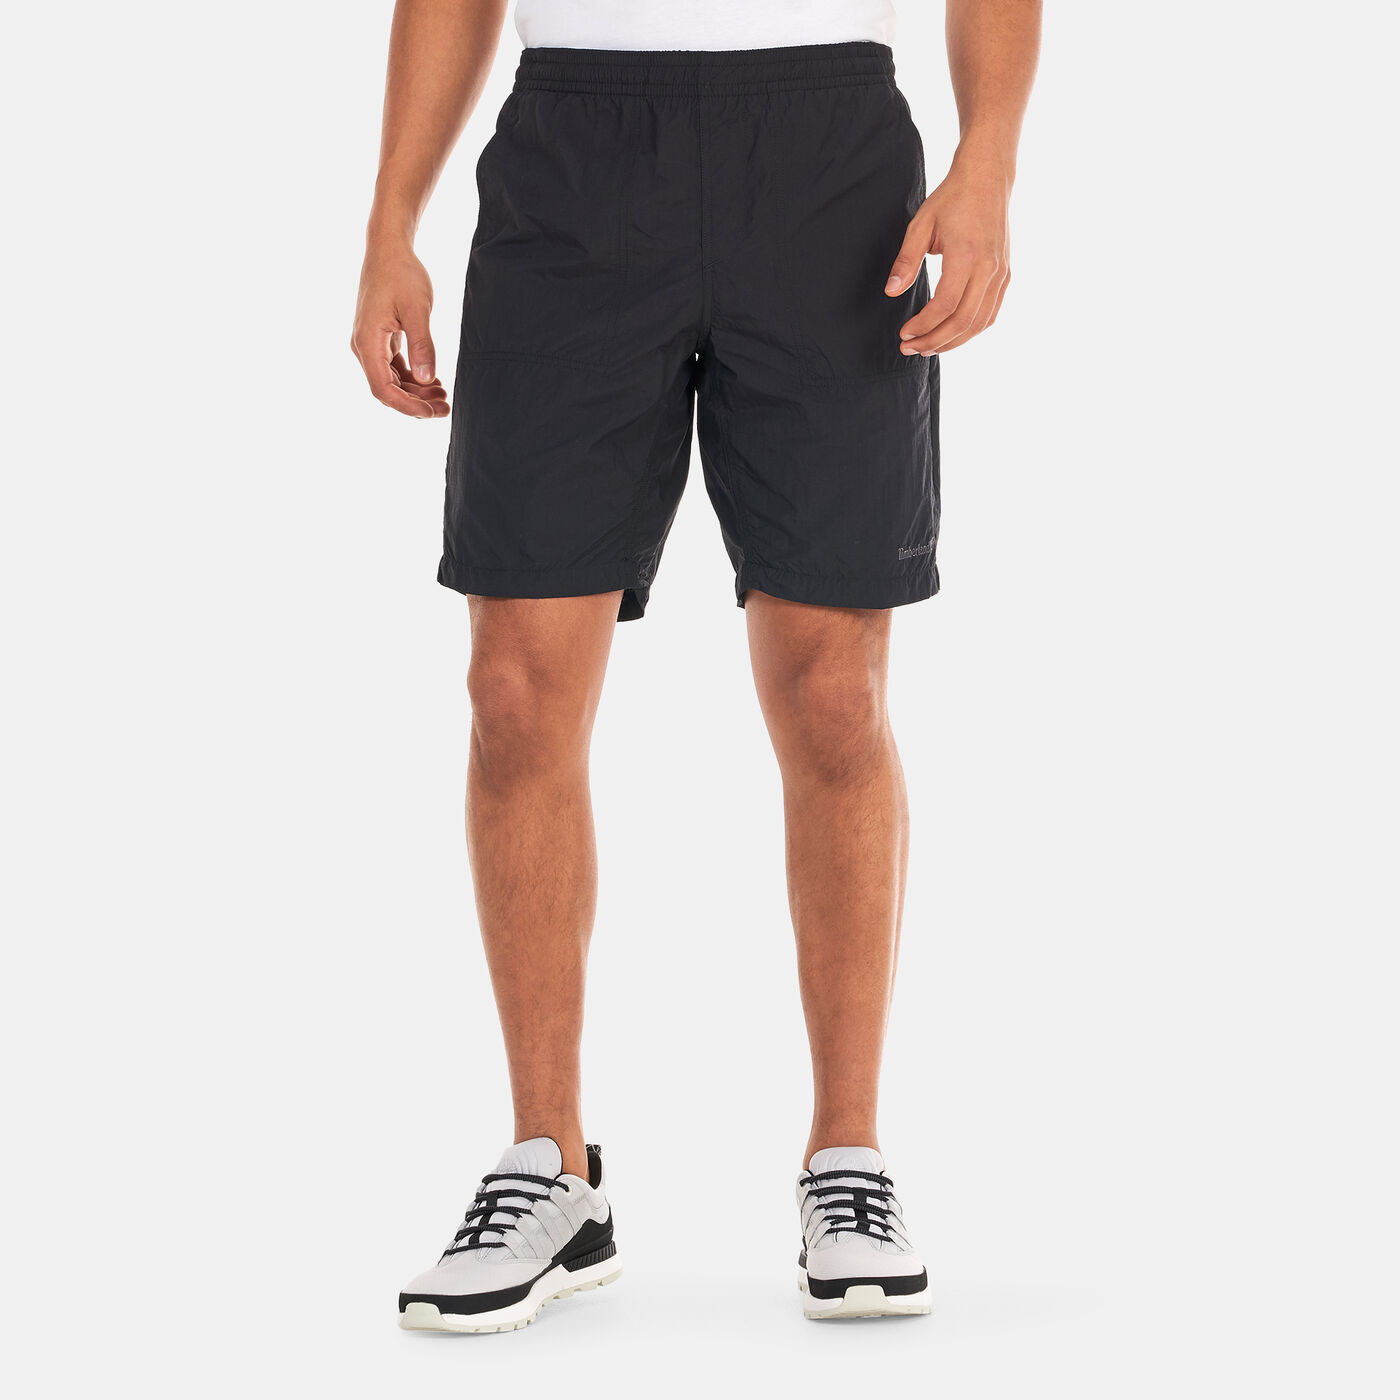 Men's Packable Quick Dry Shorts